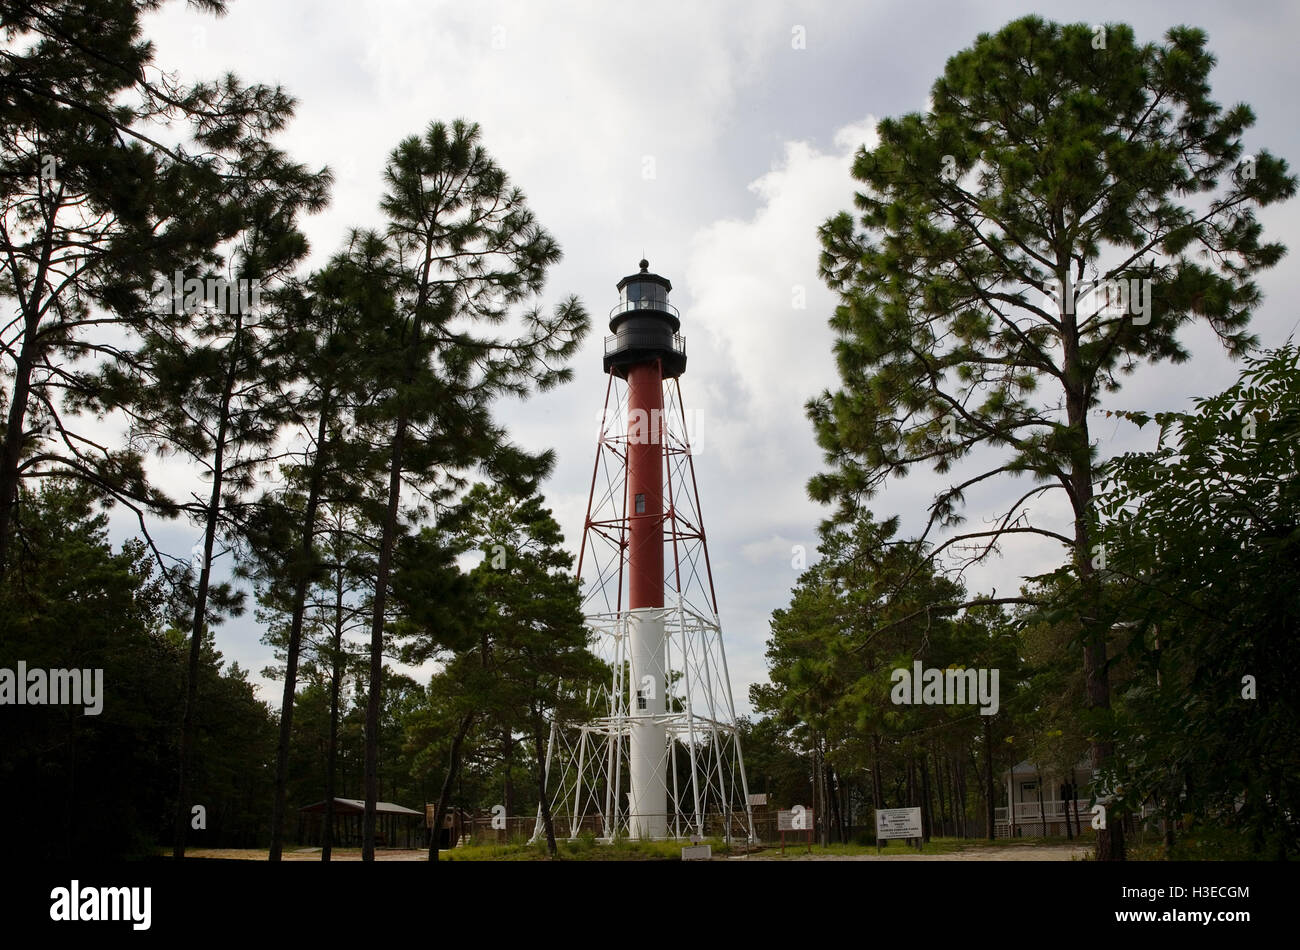 Il rosso e bianco torre di Crooked River Lighthouse aka Carrabelle luce sulla costa del Golfo della Florida sorge 100' tra alberi di pino. Foto Stock